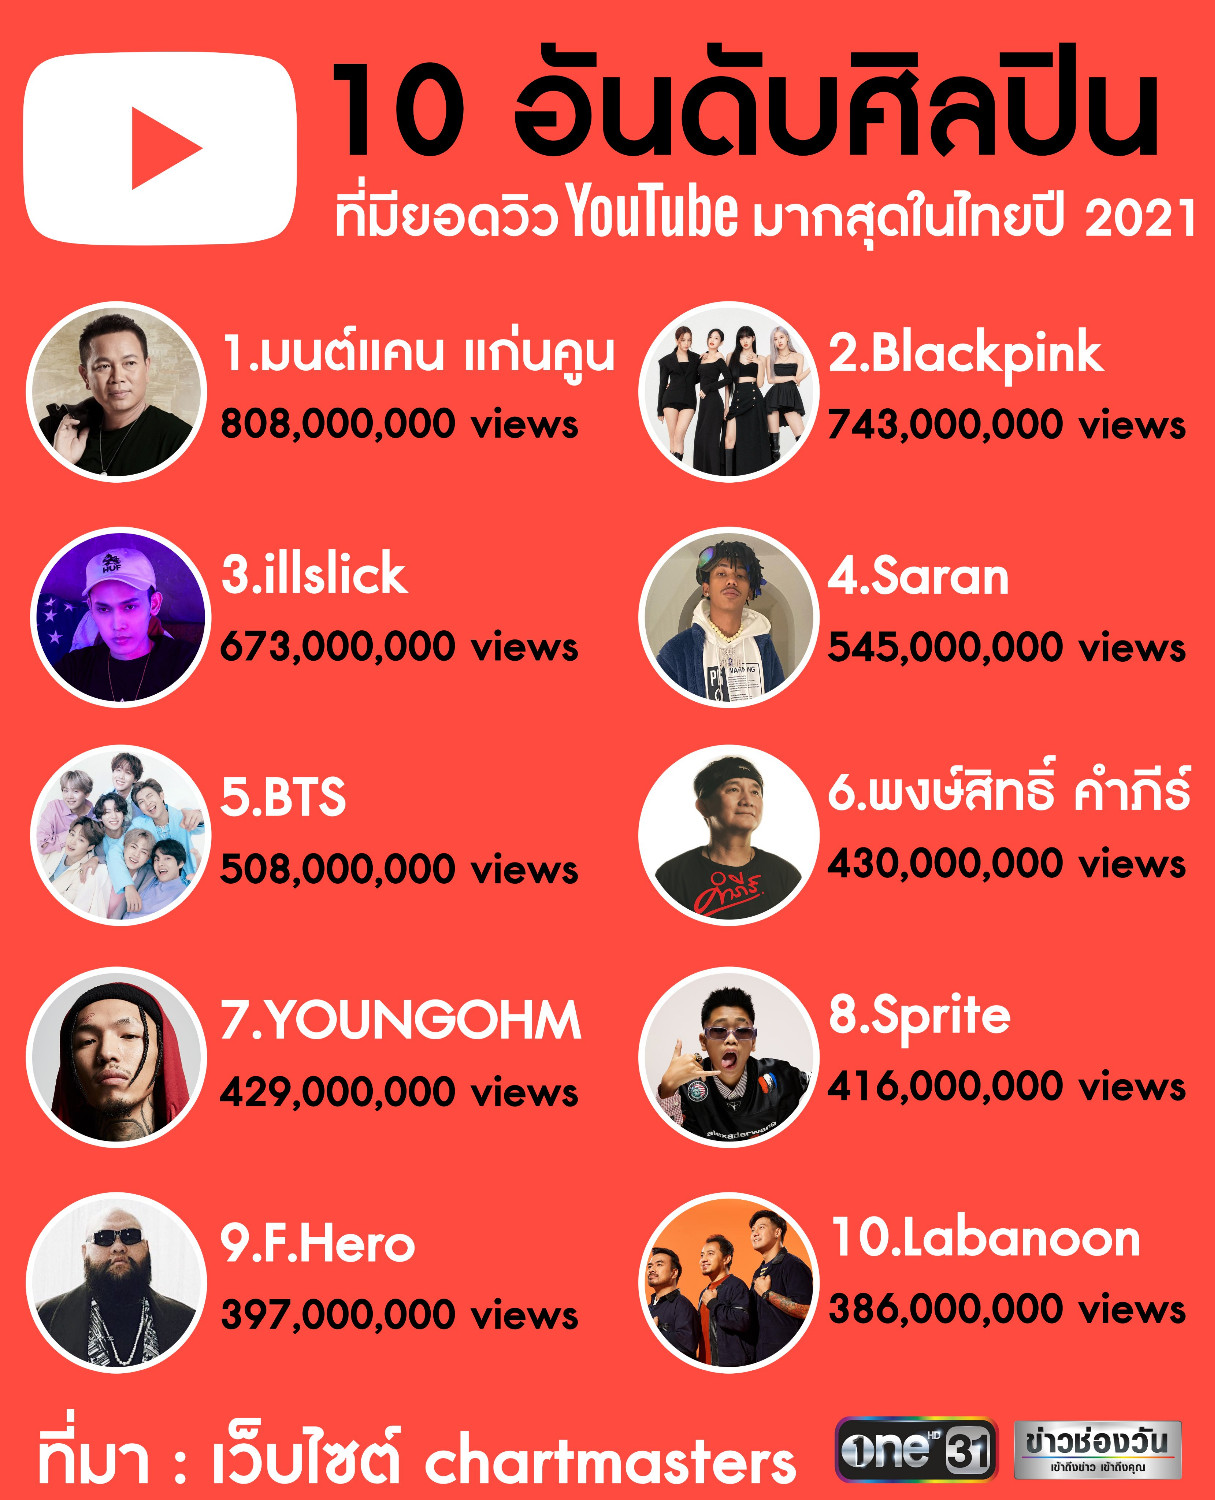 10 อันดับศิลปินที่มียอดวิว Youtube มากสุดในไทยปี 2021 - Pantip